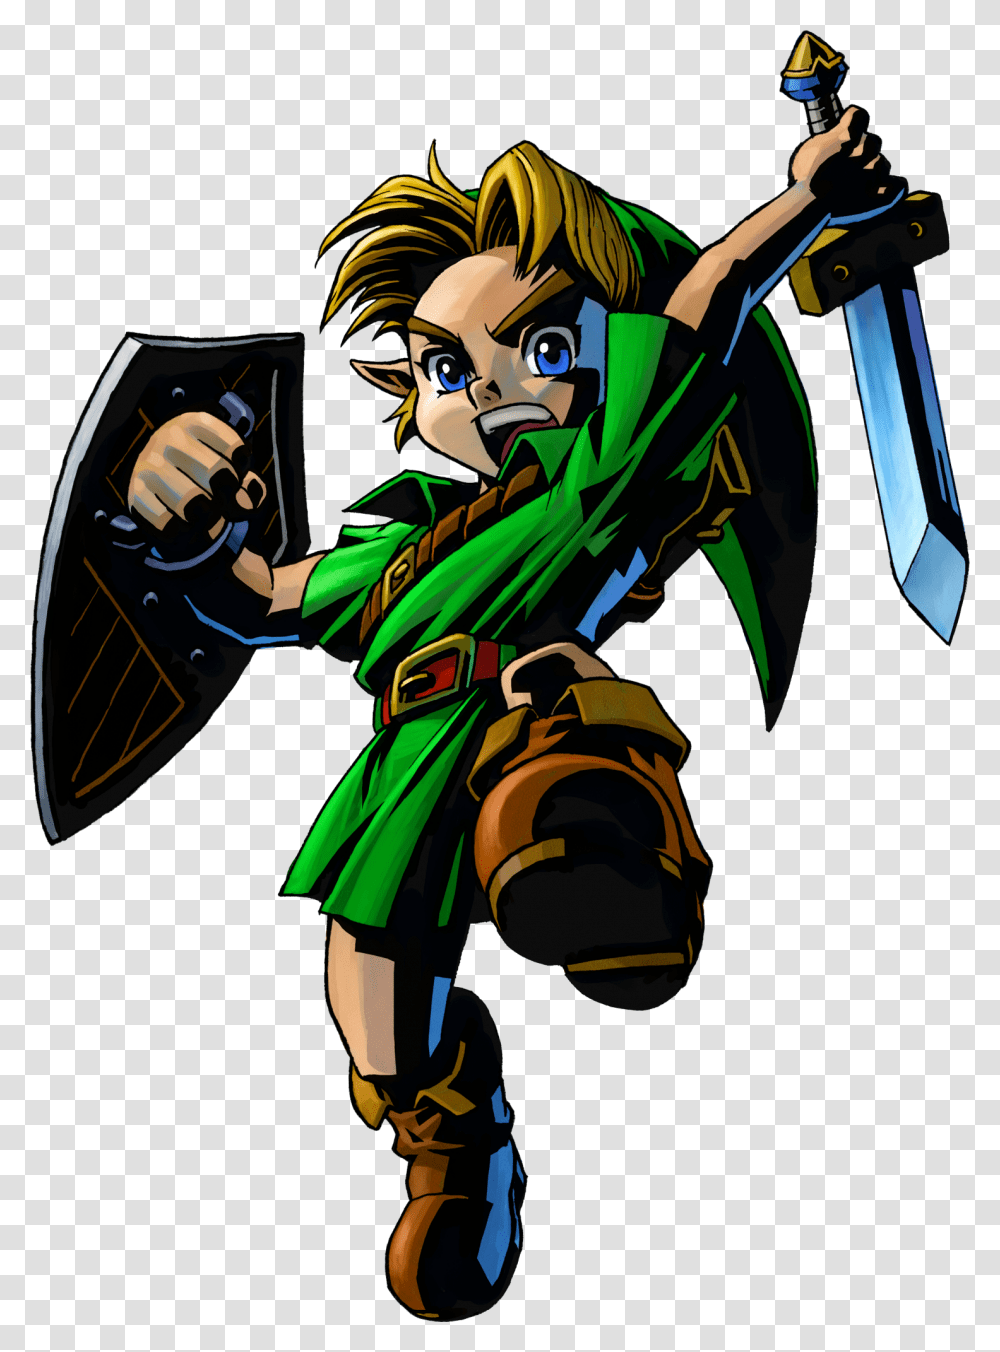 Legend Of Zelda Link Majora's Mask, Hand, Person, Comics, Book Transparent Png